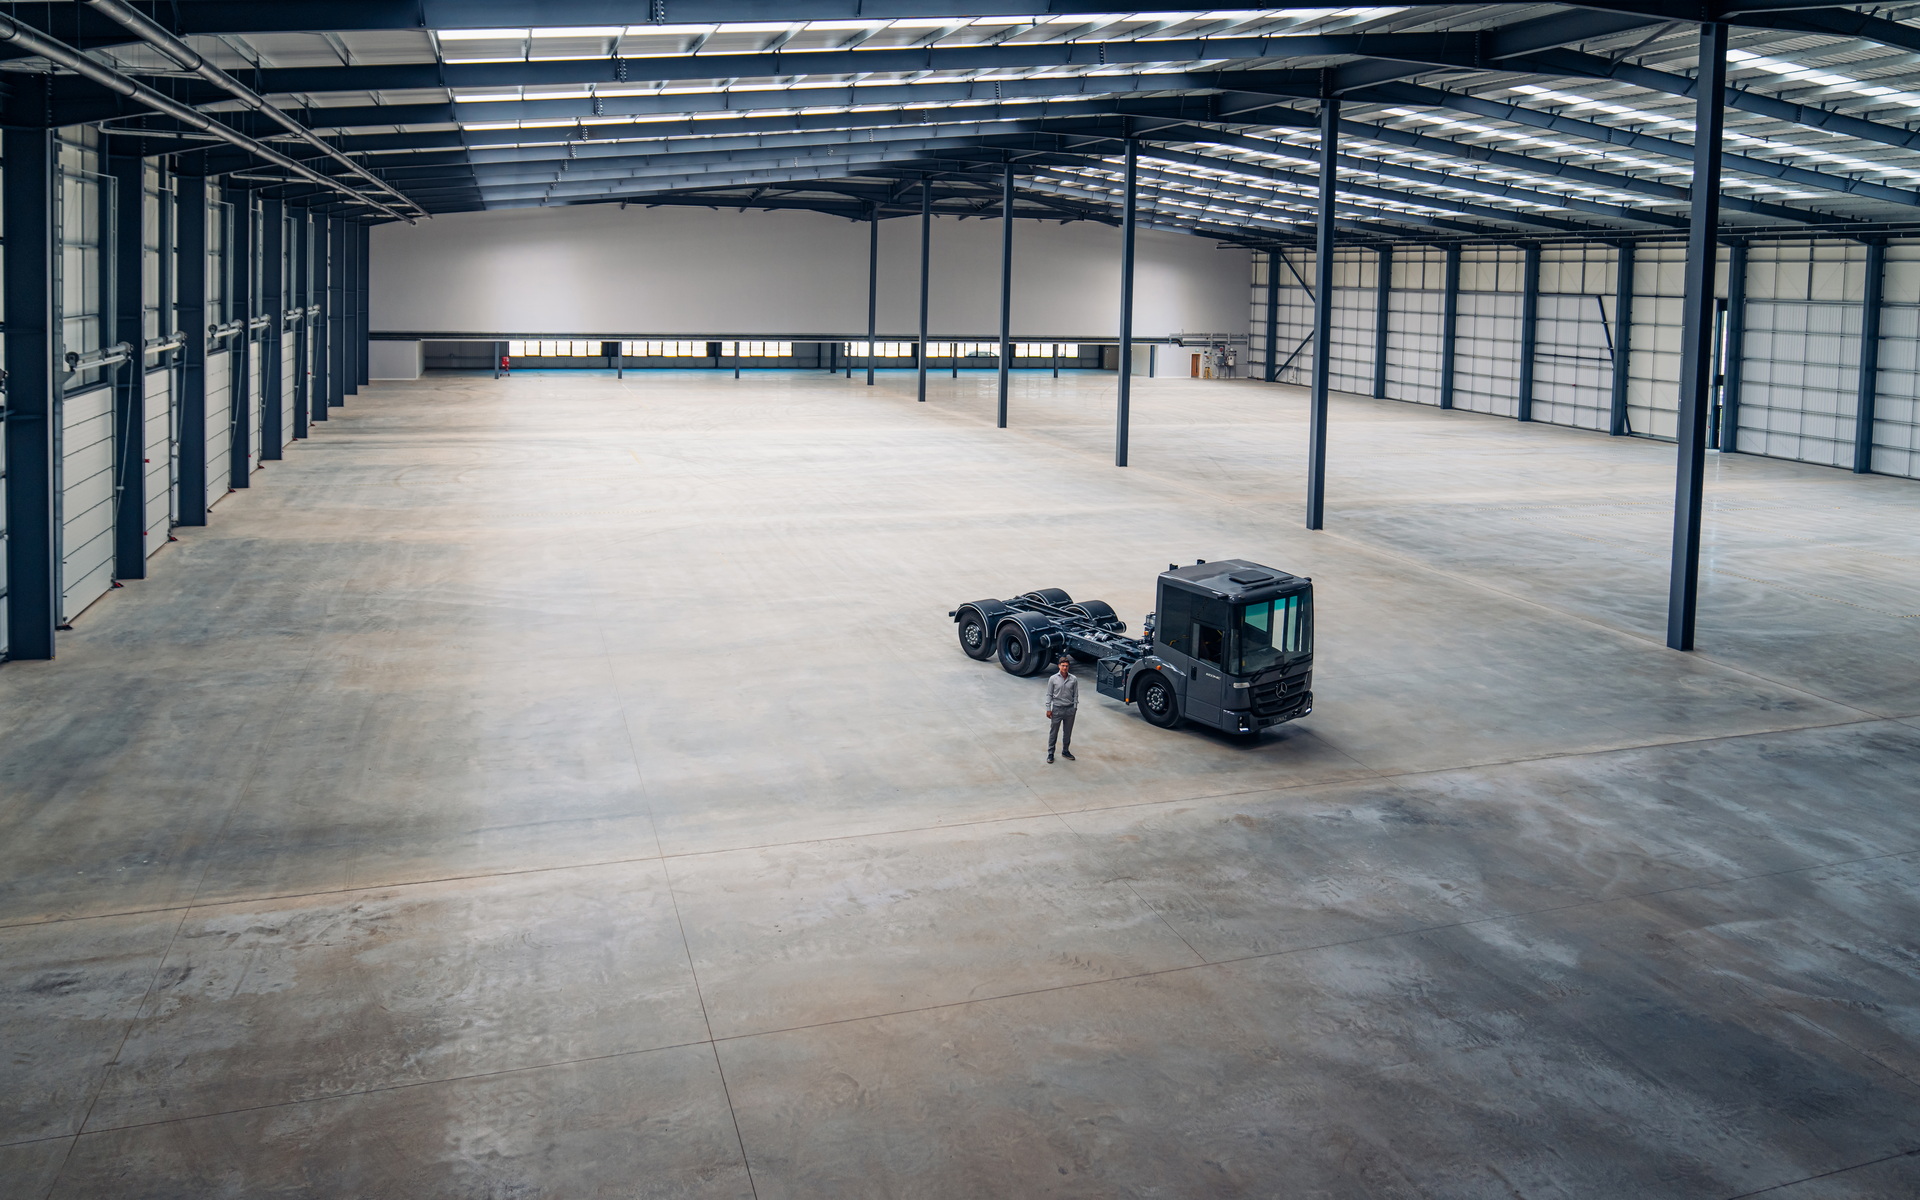 En estas nuevas instalaciones, Lunaz reciclará vehículos industriales, principalmente camiones